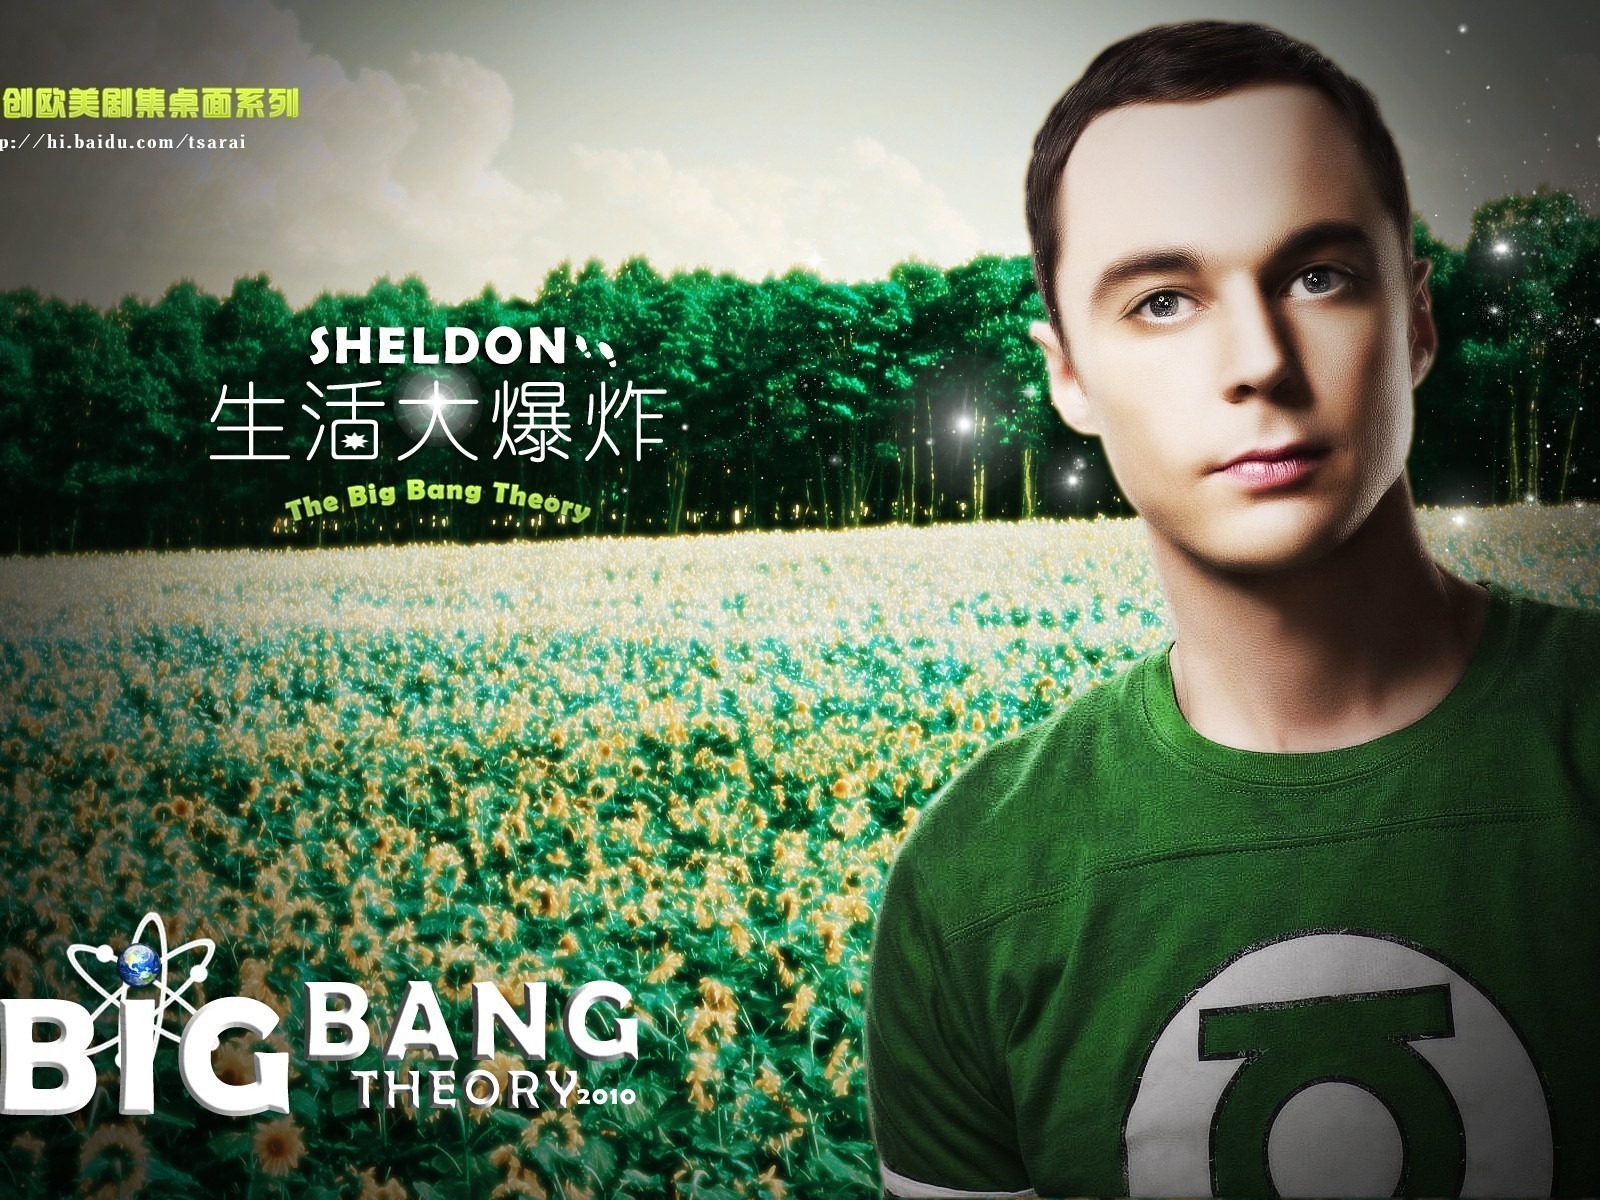 The Big Bang Theory 生活大爆炸 电视剧高清壁纸16 - 1600x1200